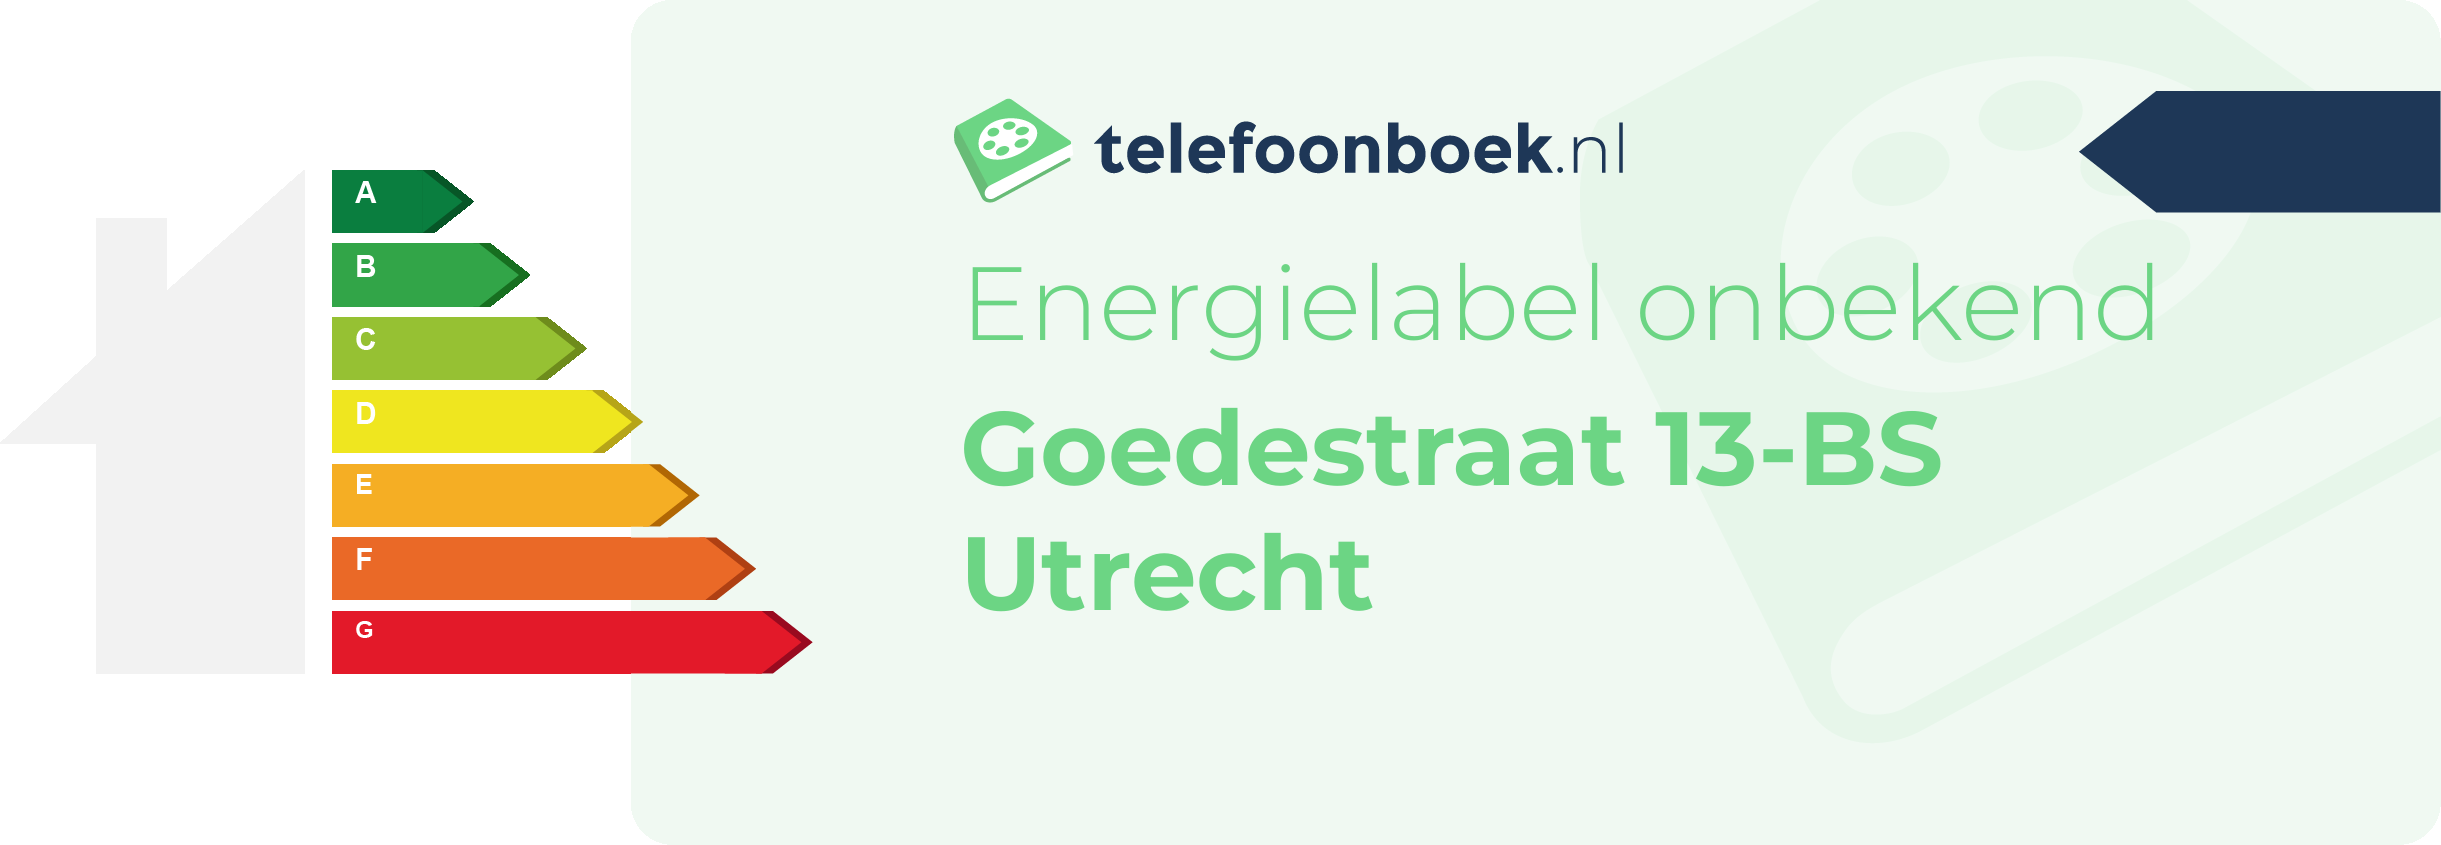 Energielabel Goedestraat 13-BS Utrecht